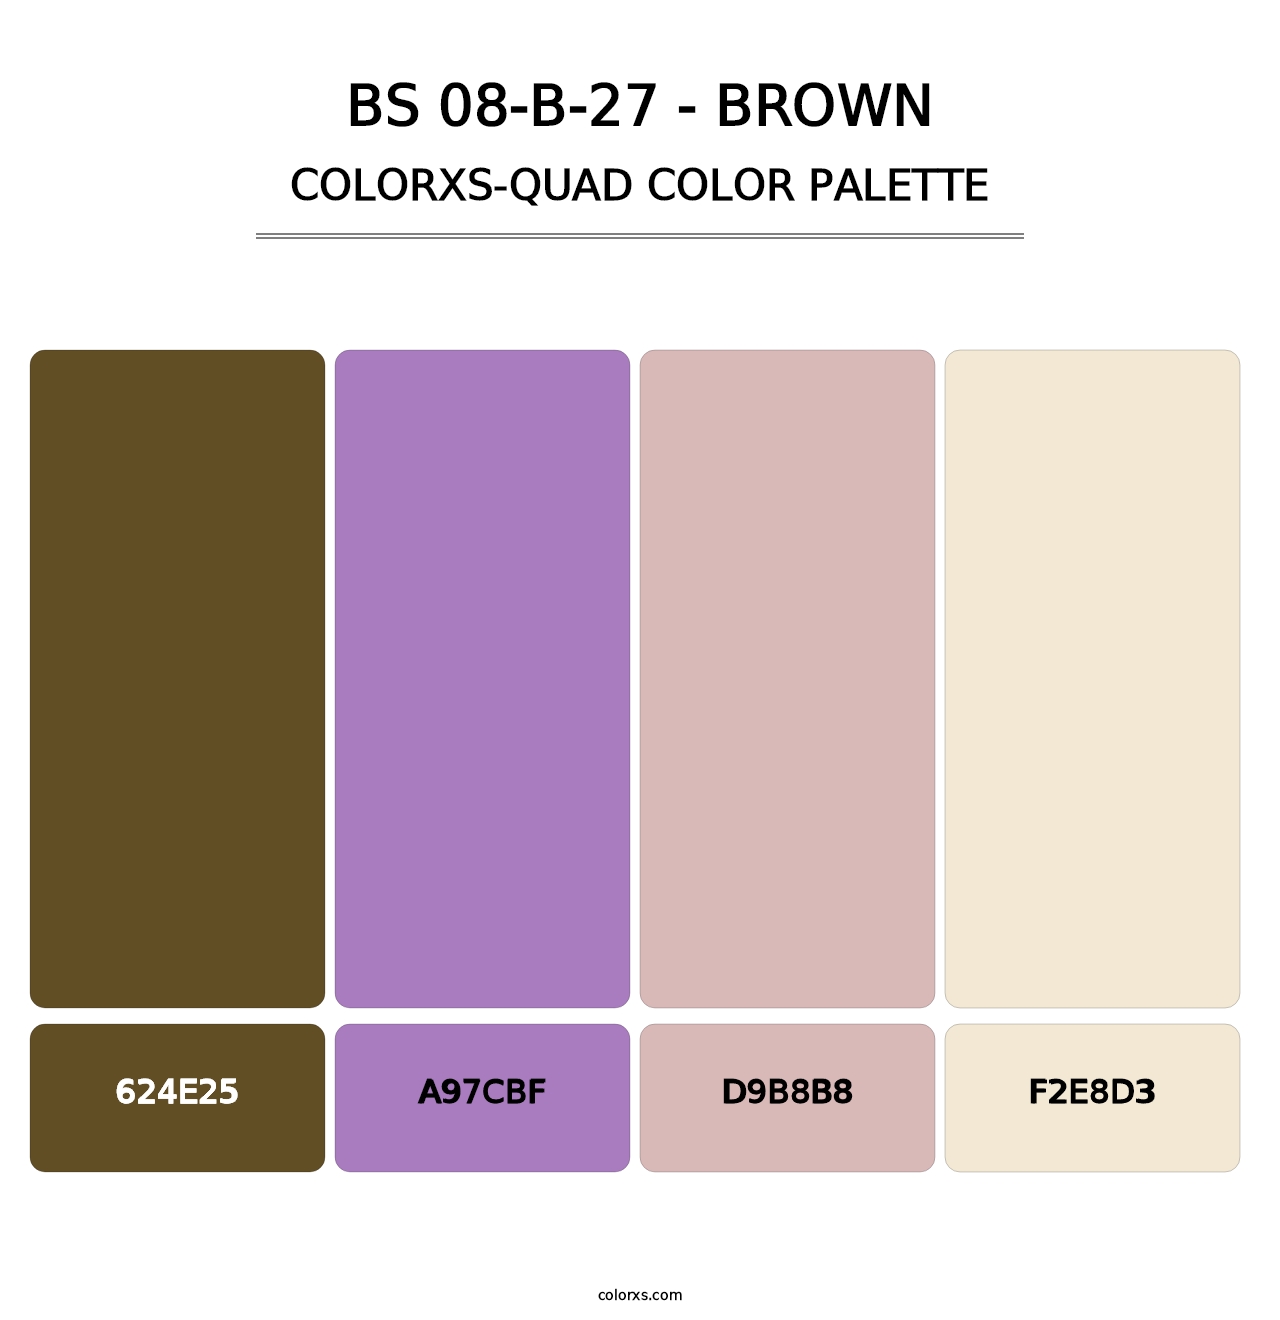 BS 08-B-27 - Brown - Colorxs Quad Palette